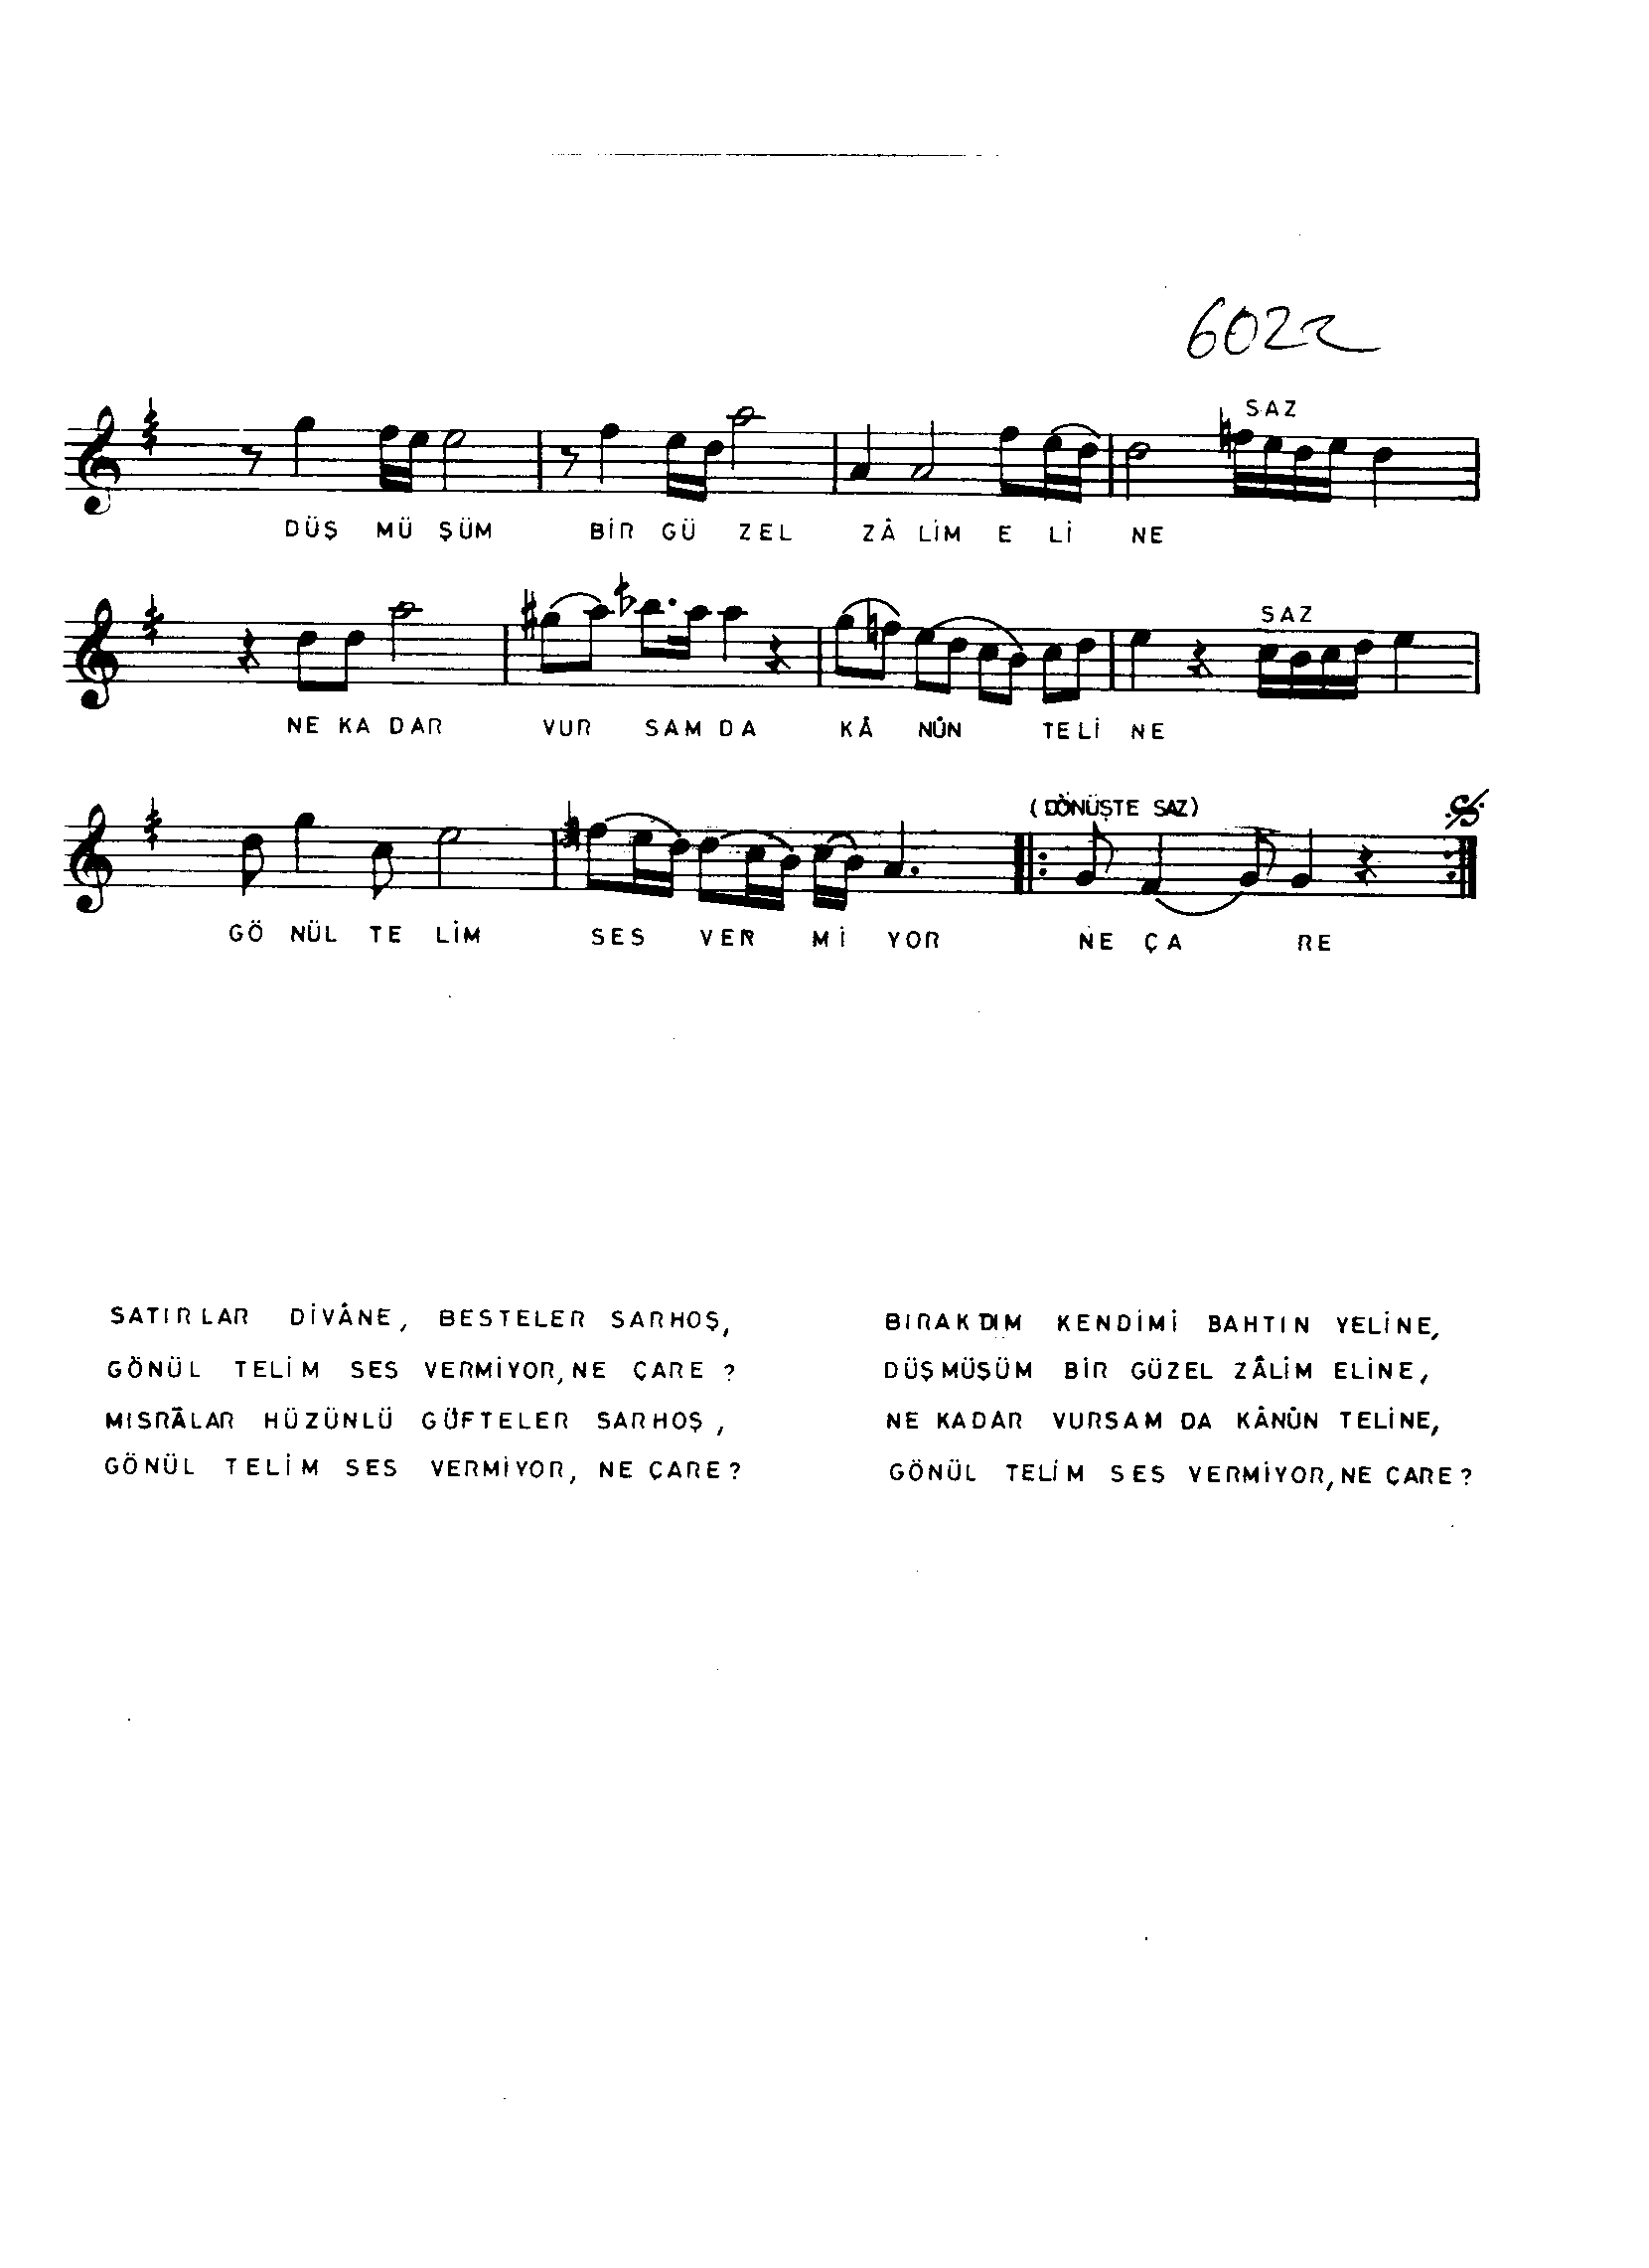 Mâhûr - Şarkı - Orhan Kızılsavaş - Sayfa 2